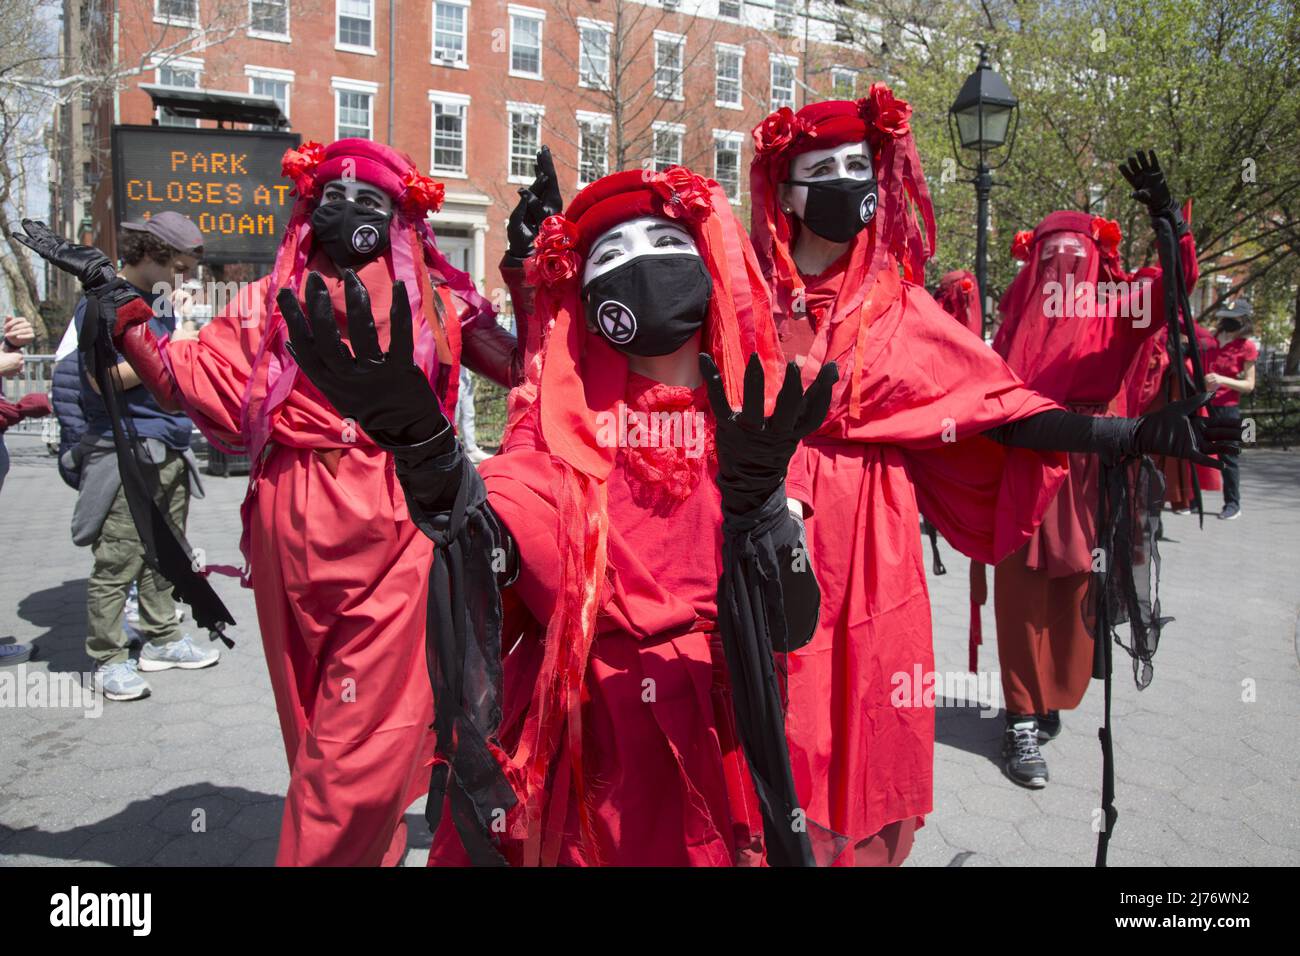 La Brigade Rouge, membres de la rébellion des extinction, un groupe international d'activistes sur le changement climatique sur la place Washington à New York lors d'une manifestation et d'une marche. Banque D'Images